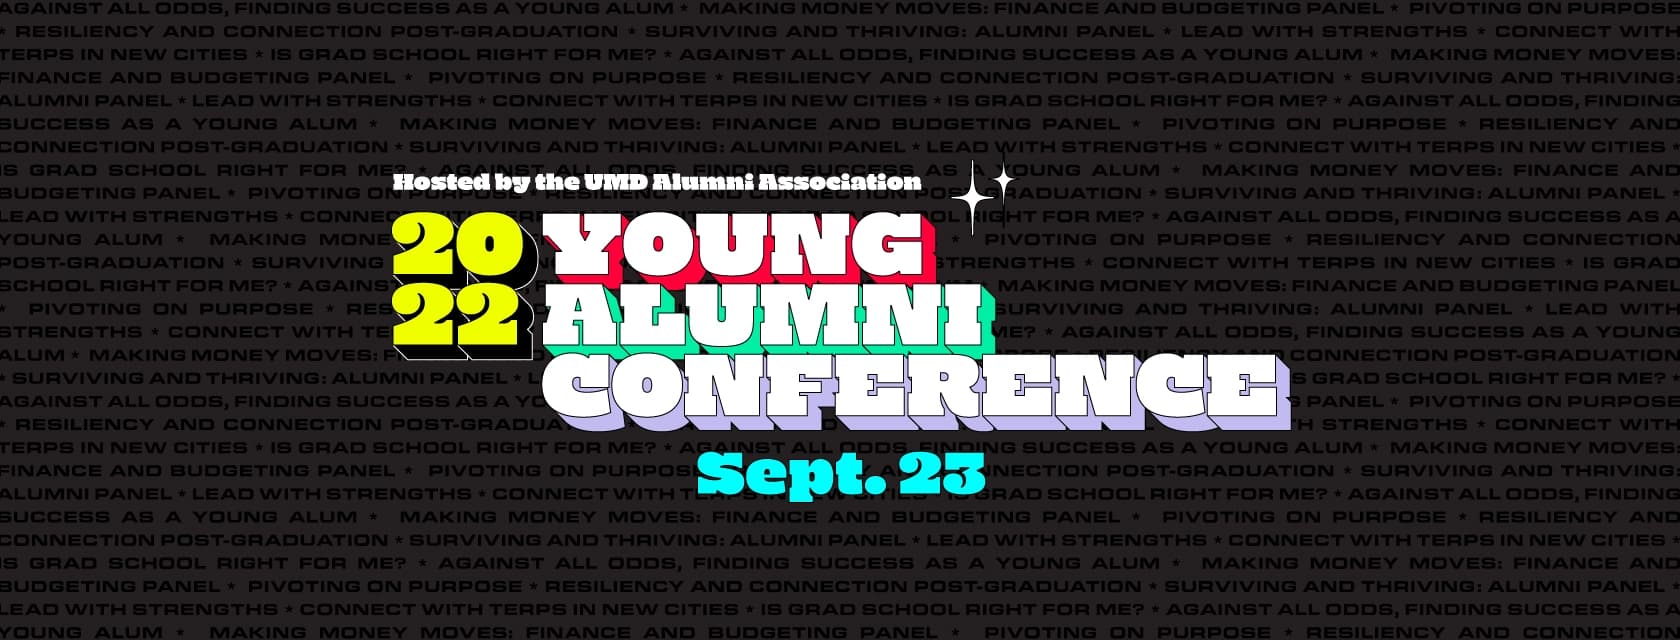 UMD Alumni Association Young Alumni Conference 2022 Banner, September 23, 2022